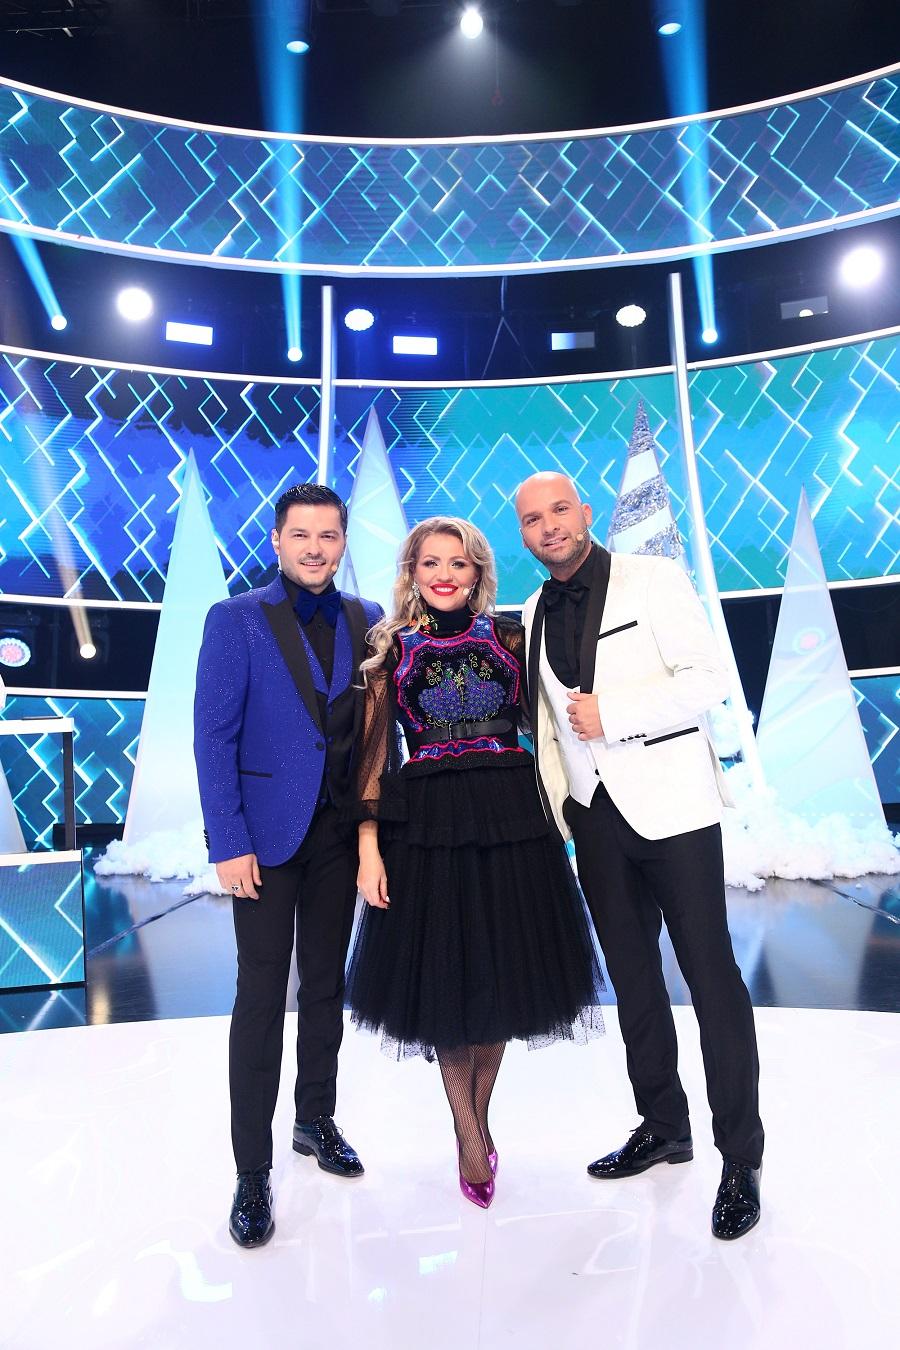 Emisiunea „Show și-așa” va fi difuzată de Revelion, de la ora 20:00, la Antena 1